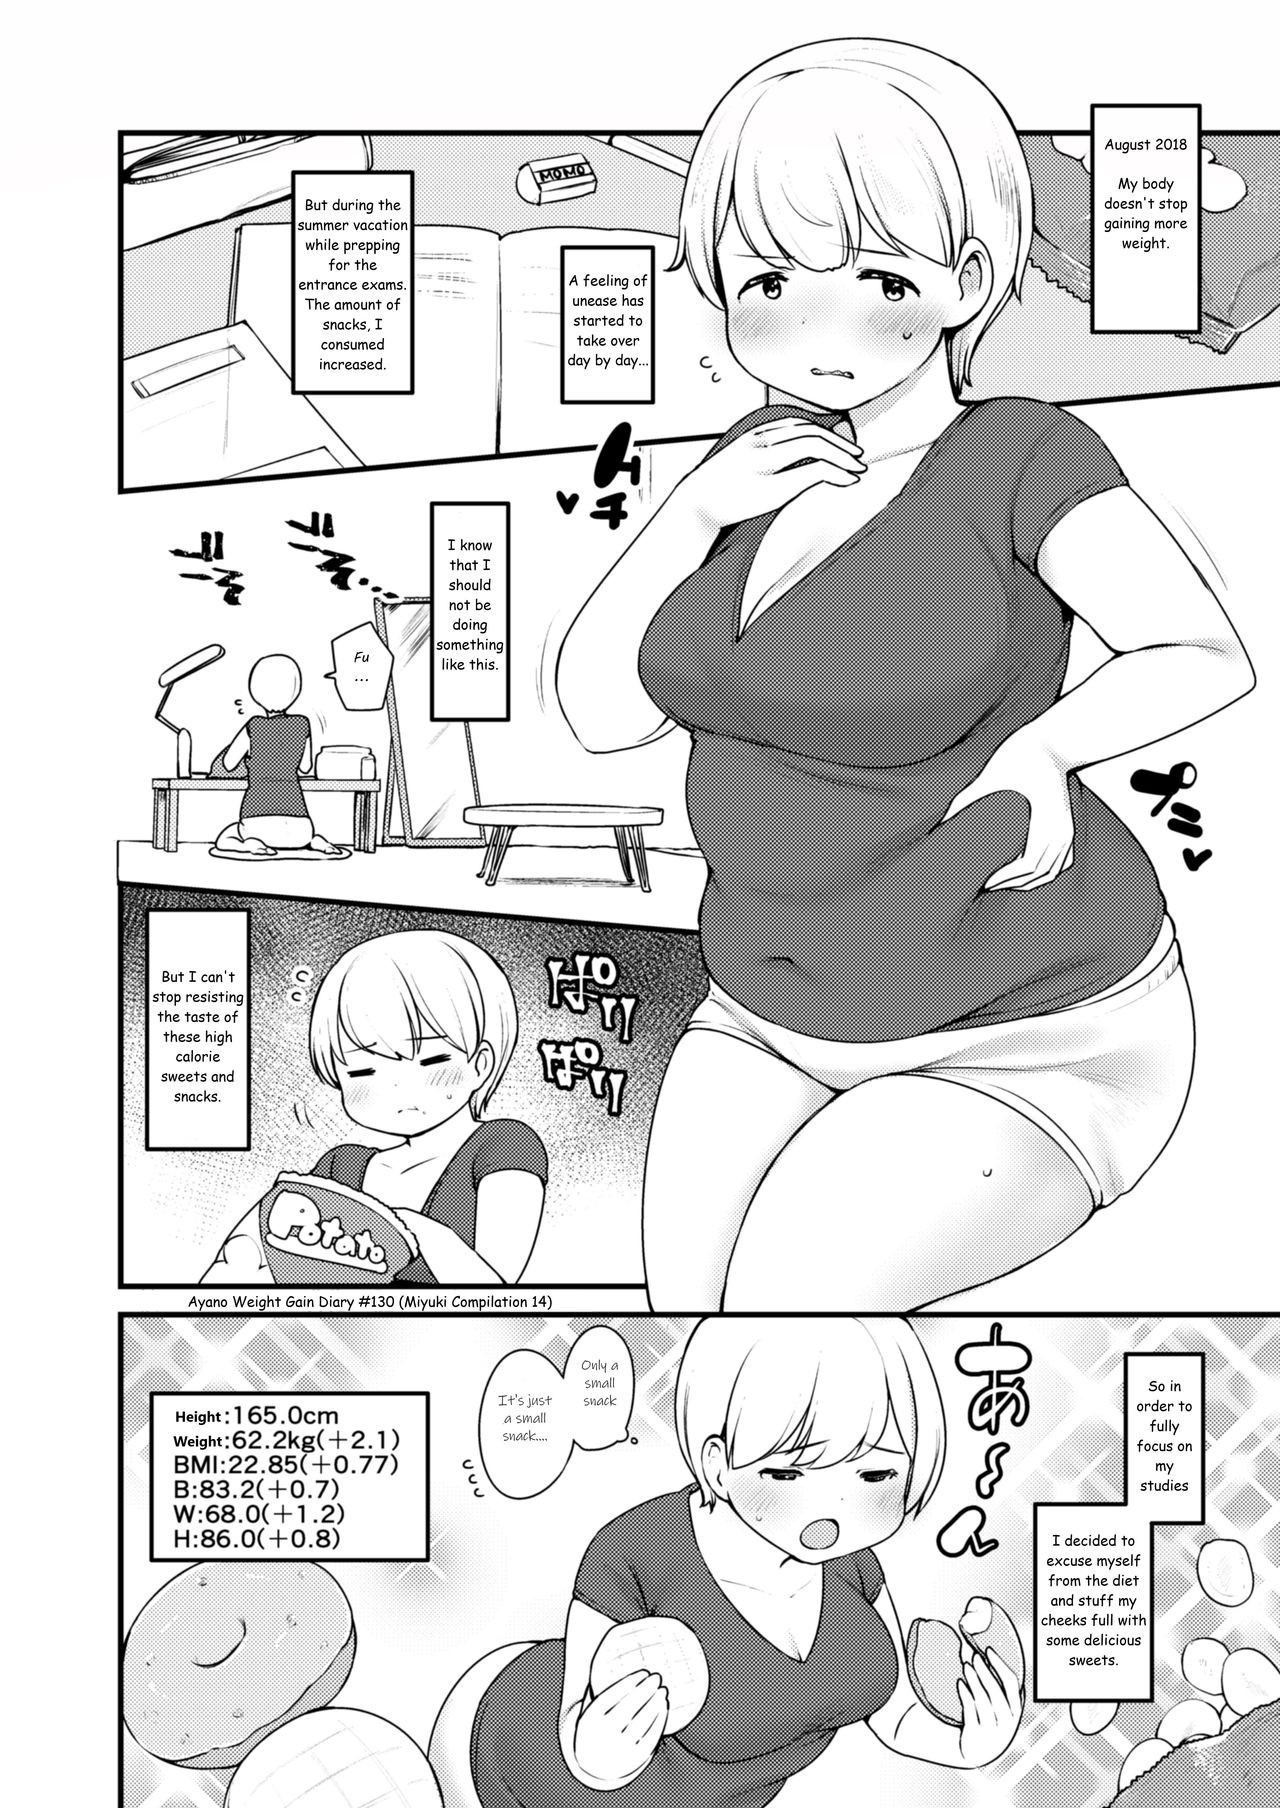 Weight gain manga hentai